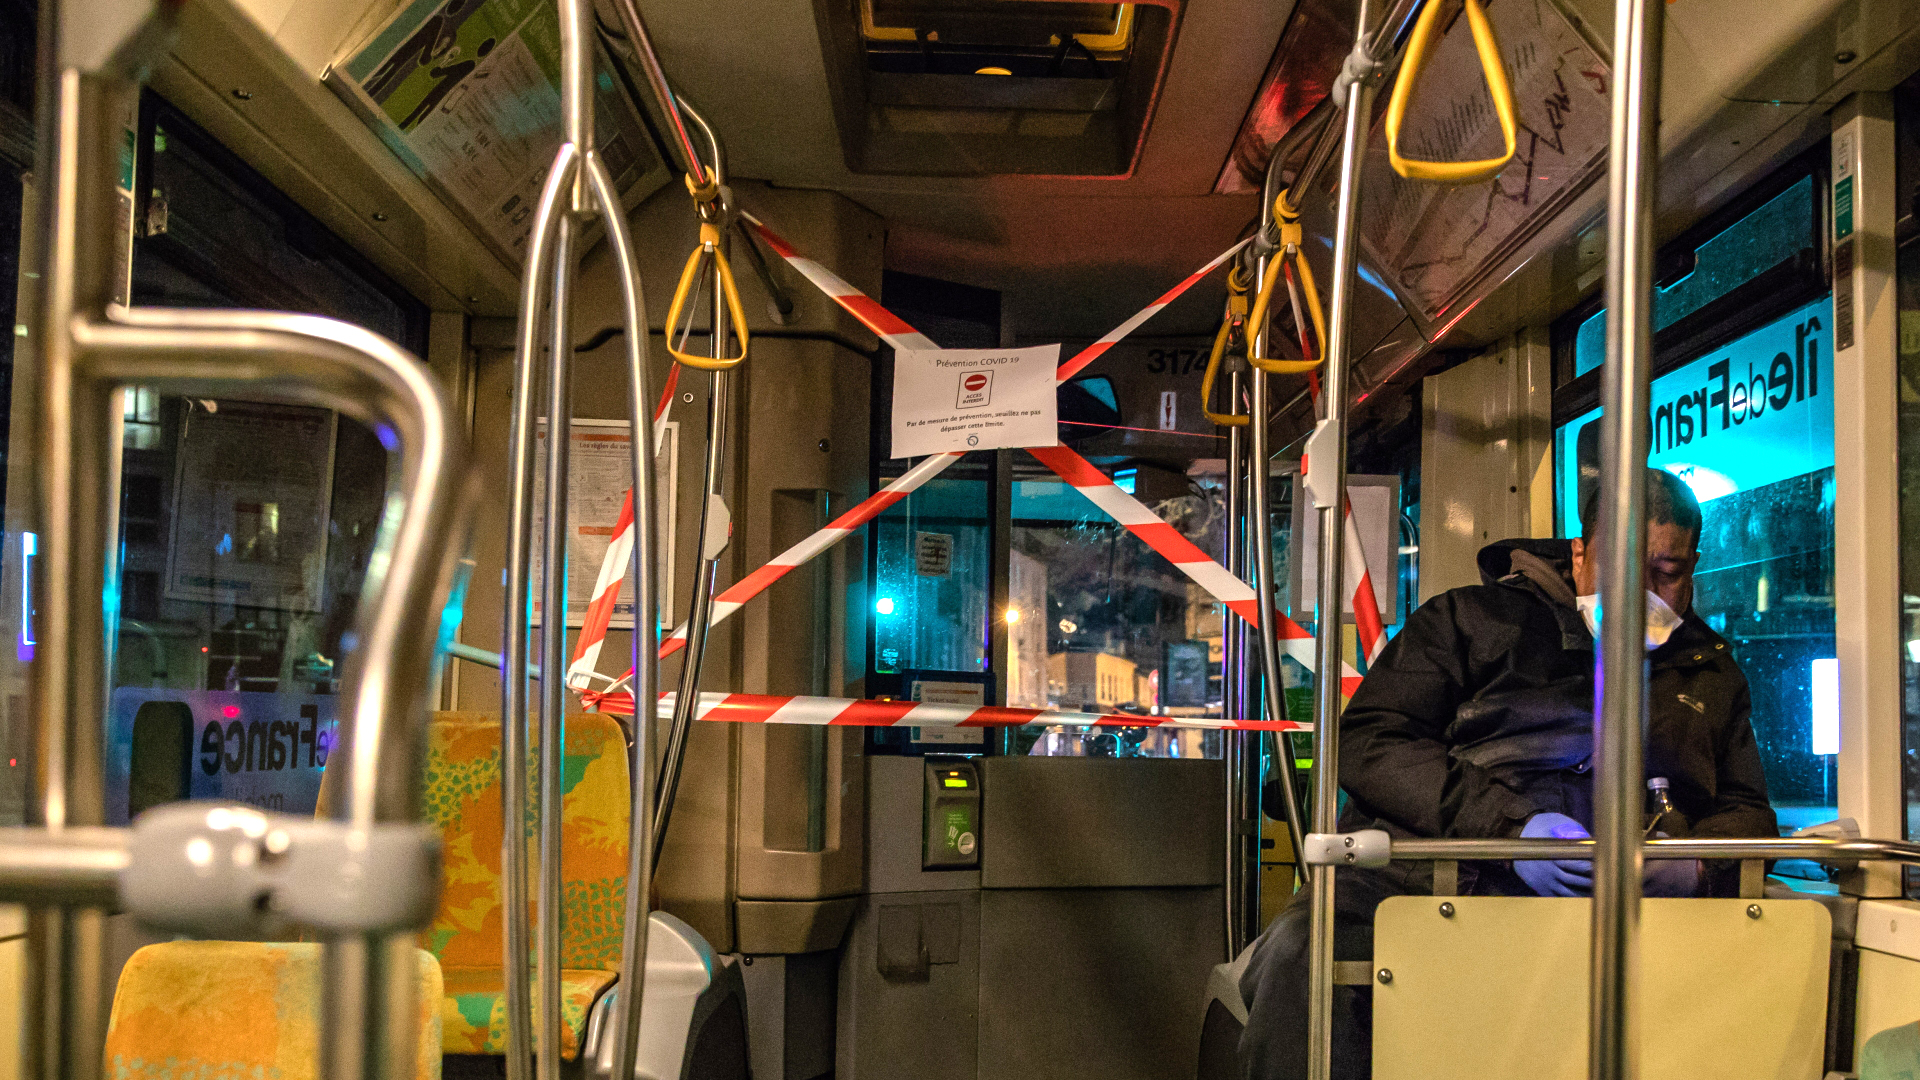 Eine provisorische Durchgangssperre mit Flatterband als Schutzmaßnahme für den Busfahrer ist in einem Bus in Frankreich angebracht worden (Symbolbild). | Bildquelle: dpa